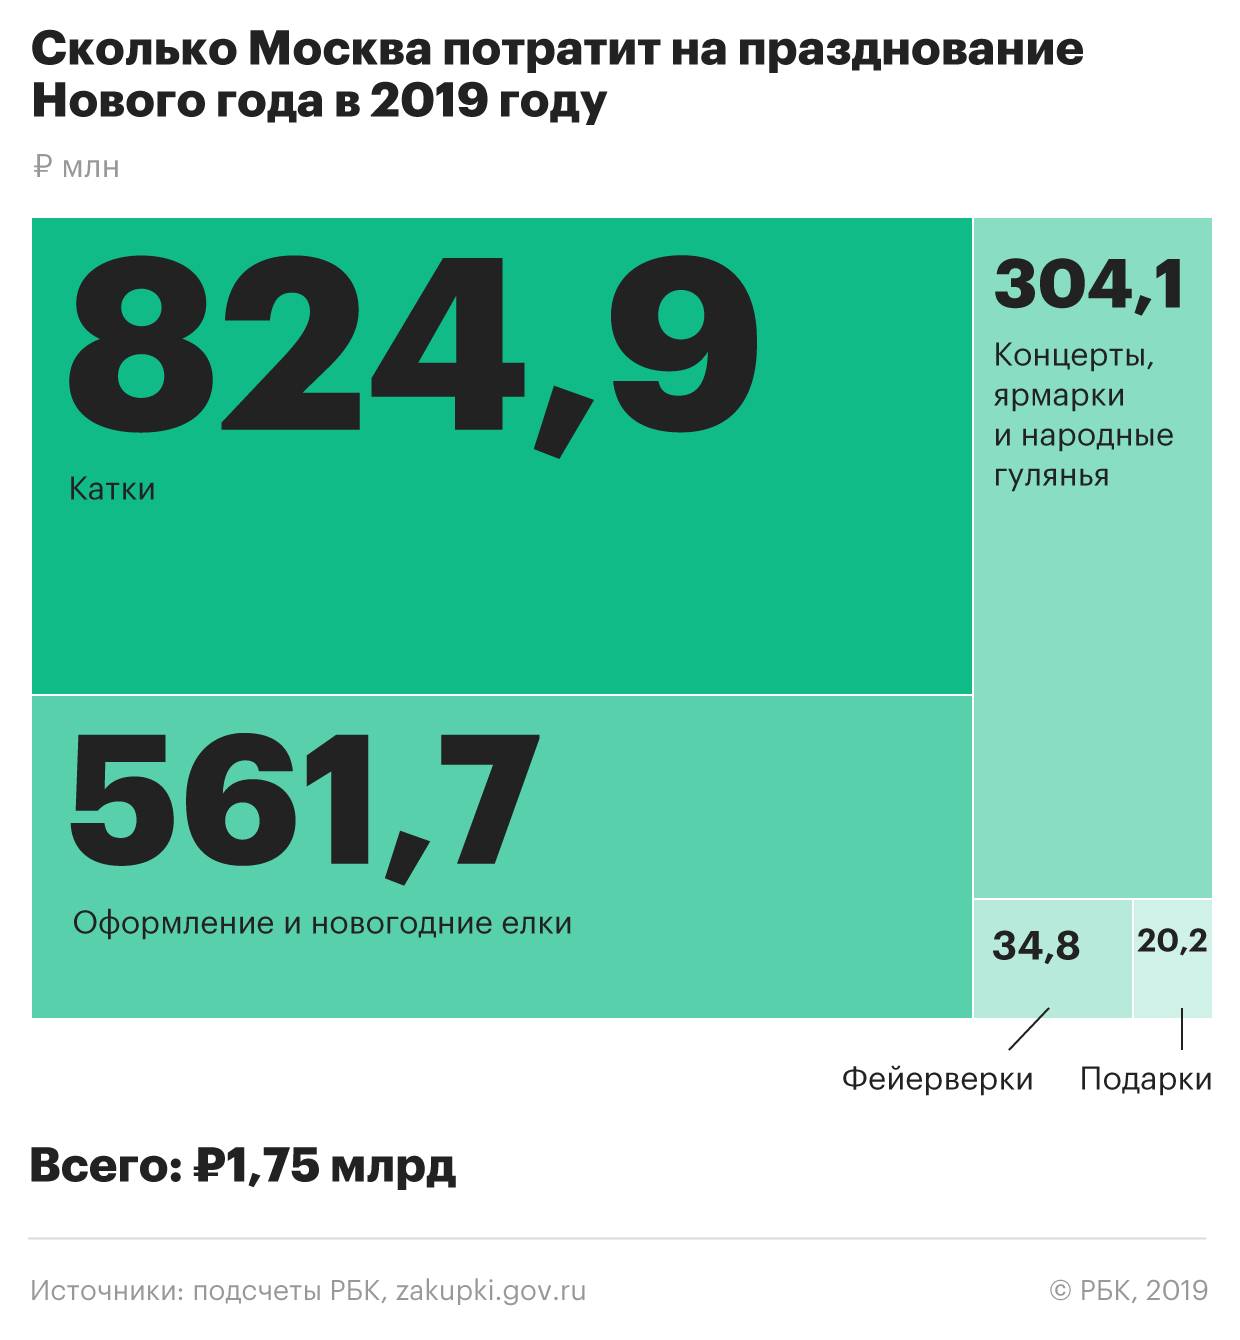 Новый год обойдется Москве почти в миллиард рублей